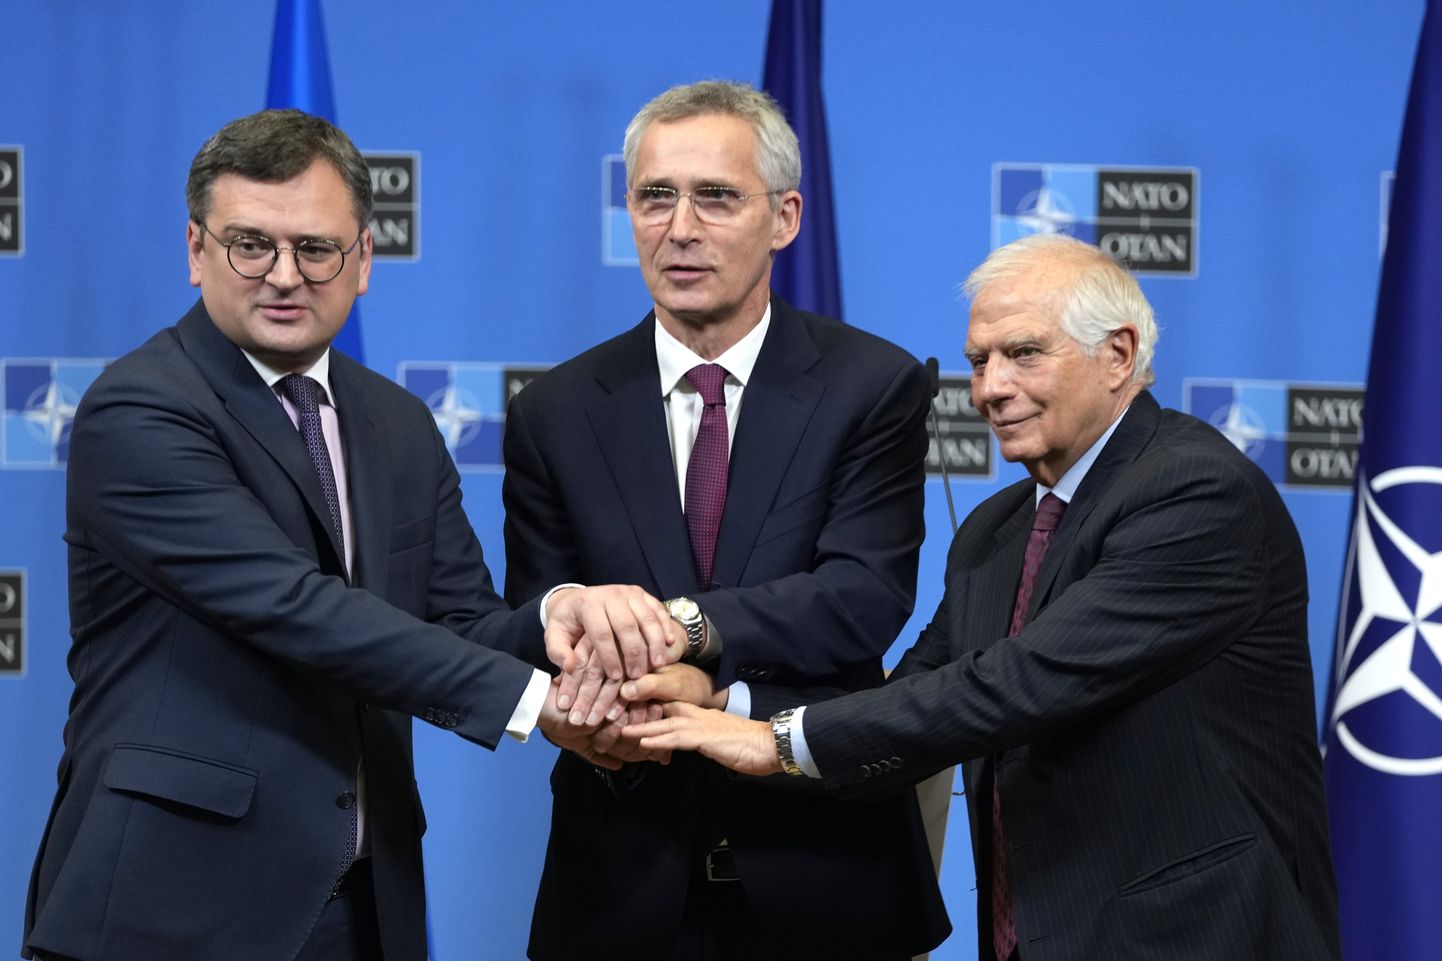 Министр иностранных дел Украины Дмитрий Кулеба, генеральный секретарь НАТО Йенс Столтенберг и верховный представитель ЕС по иностранным делам и политике безопасности Жозеп Боррель